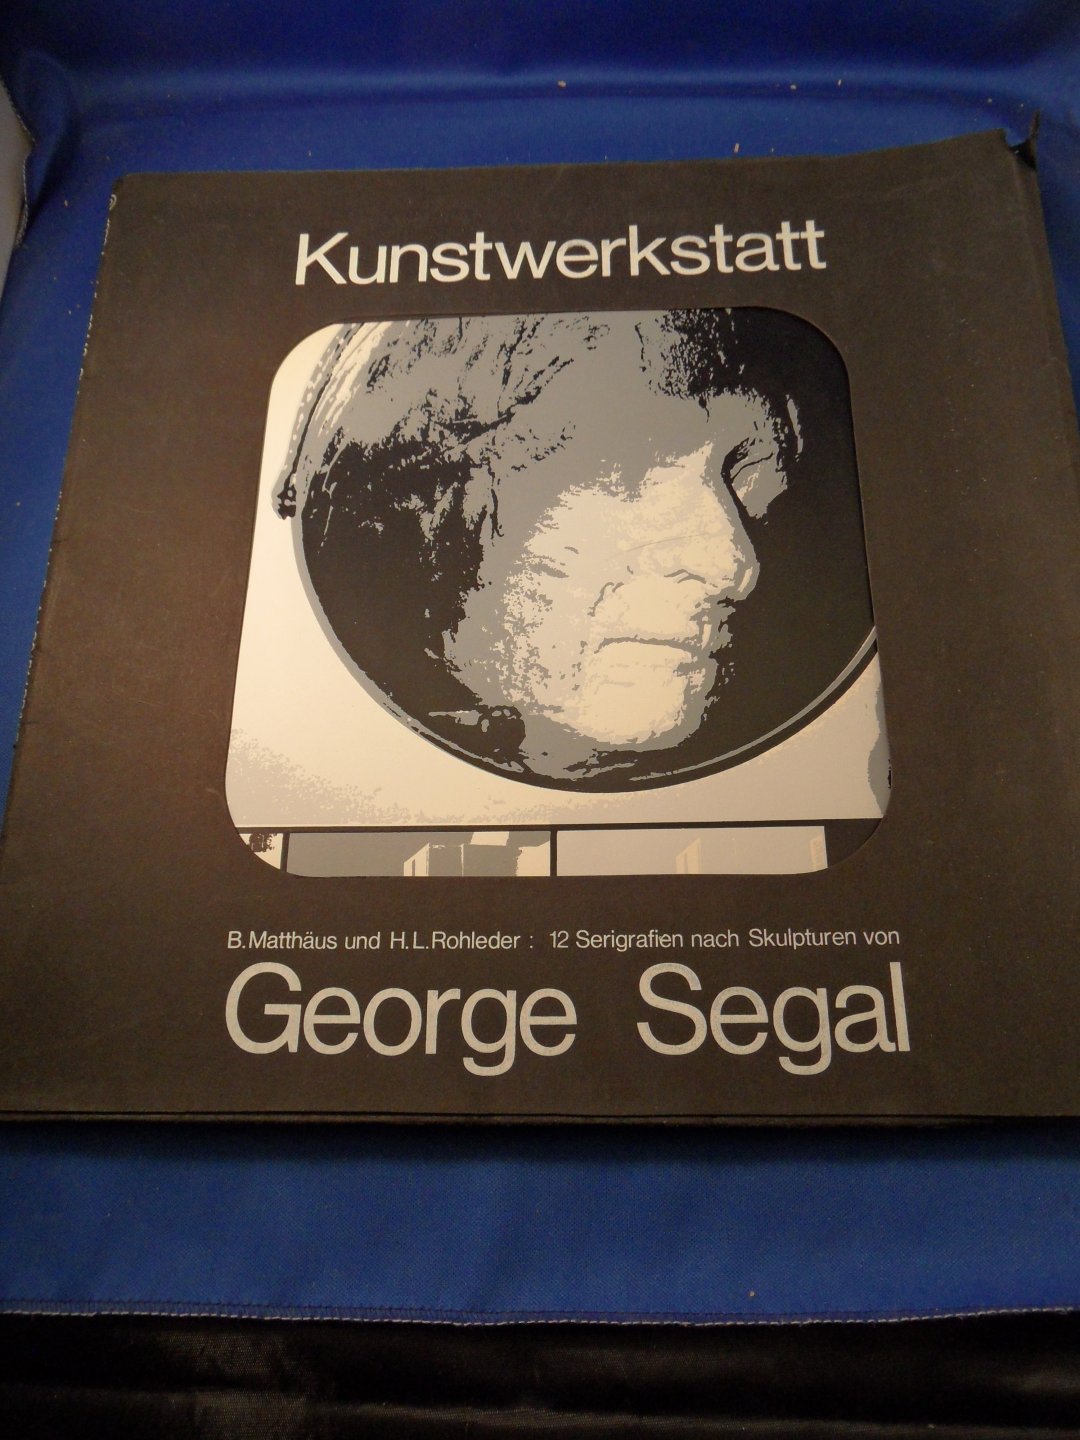 Matthäus,B. & H.L.Rohleder - George Segal. Kunstwerkstatt. 12 serigrafien nach Skulpturen van George Segal